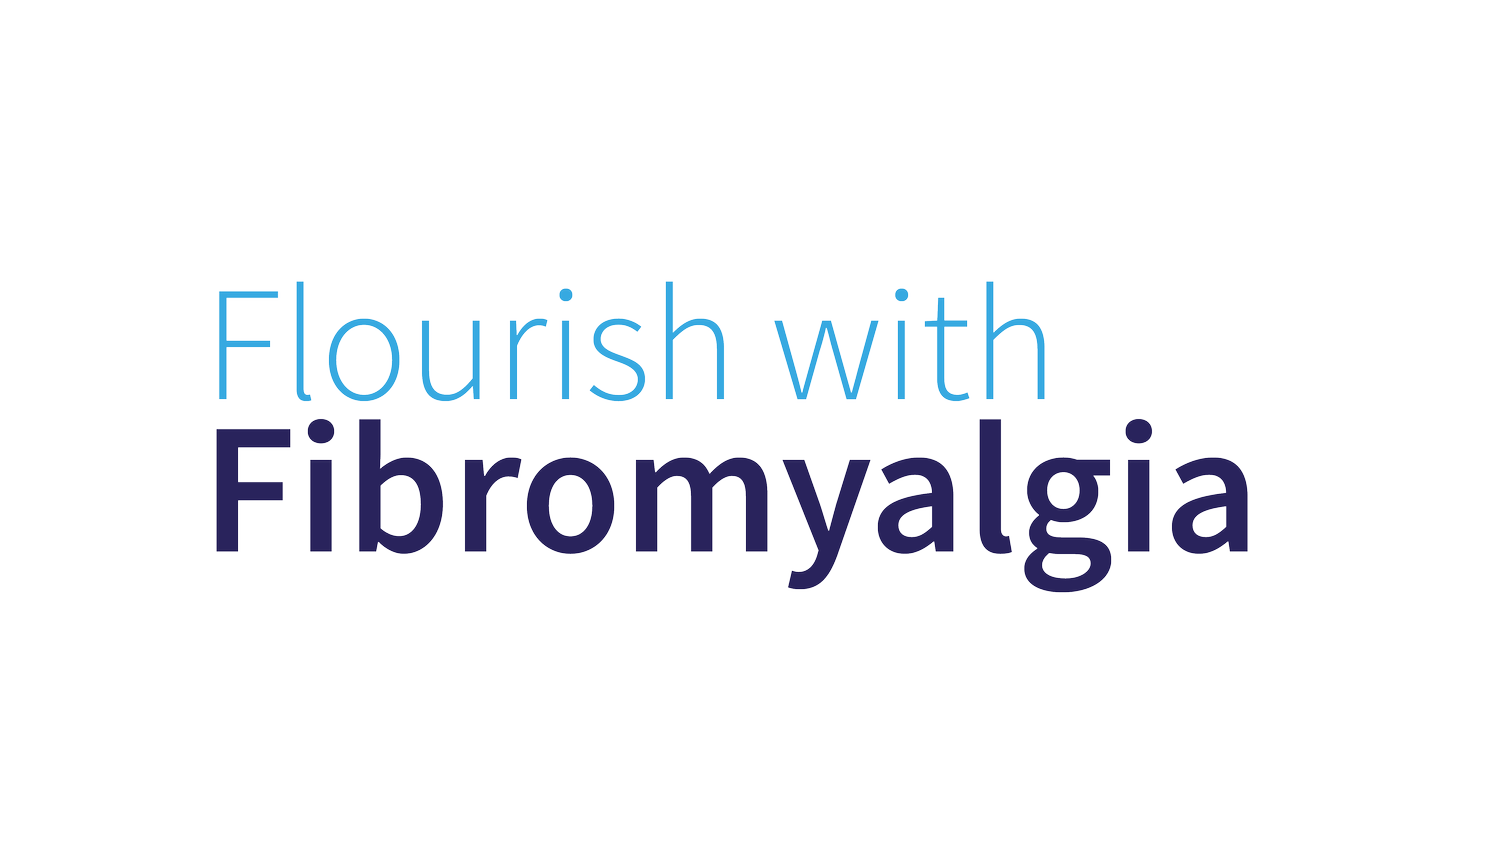 Flourish with Fibromyalgia